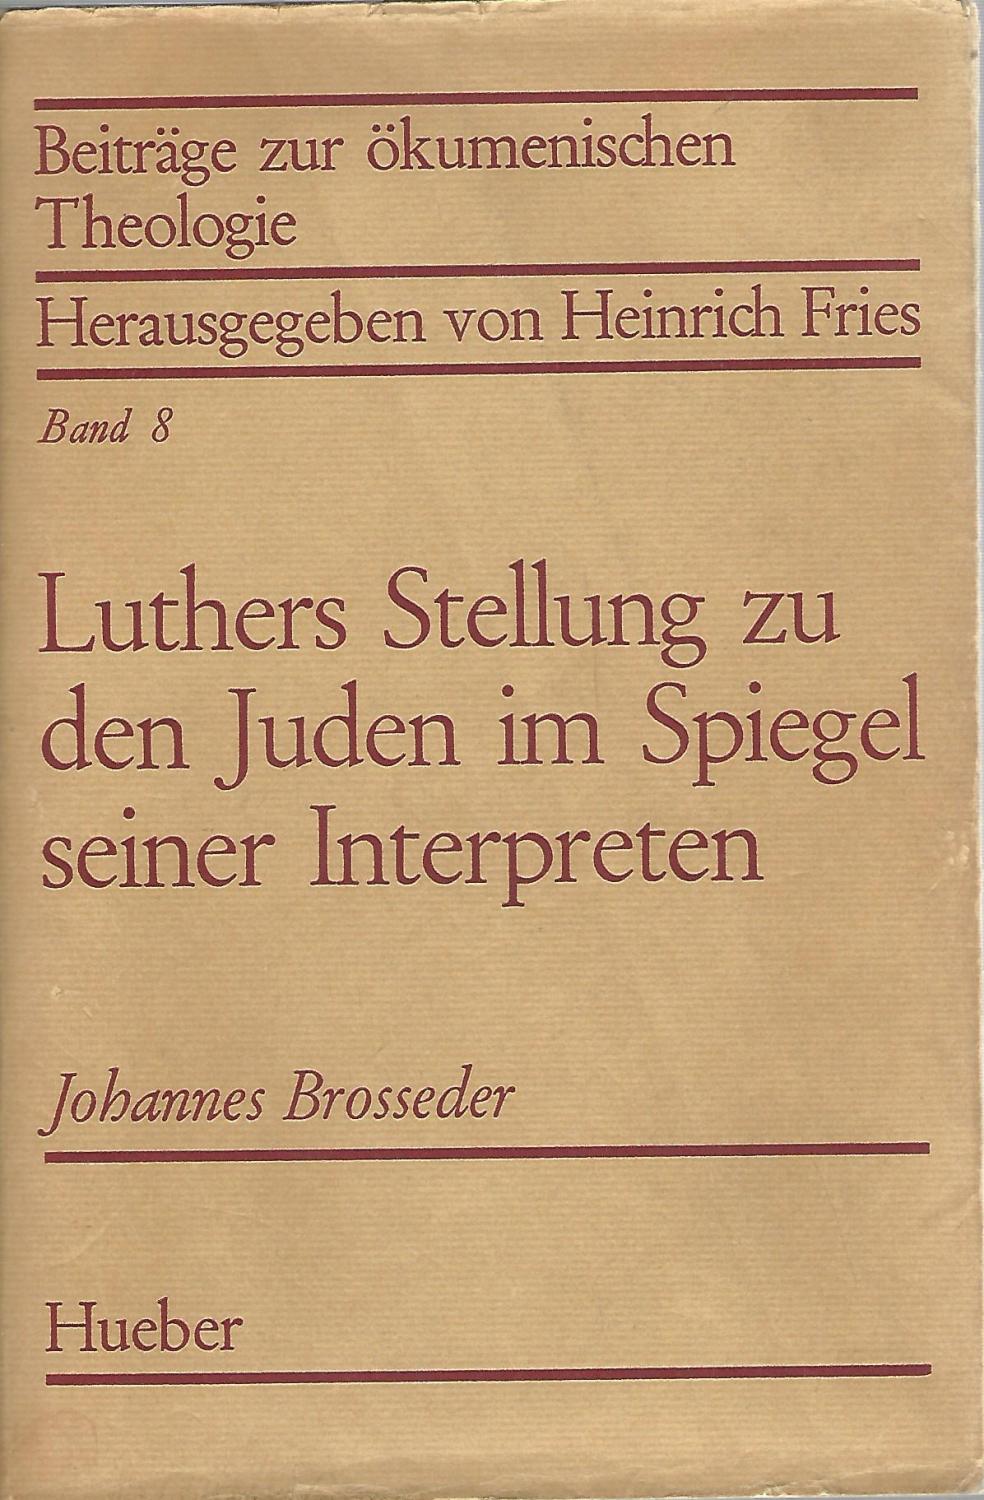 Luthers Stellung zu den Juden im Spiegel Brosseder Johannes Verfasser